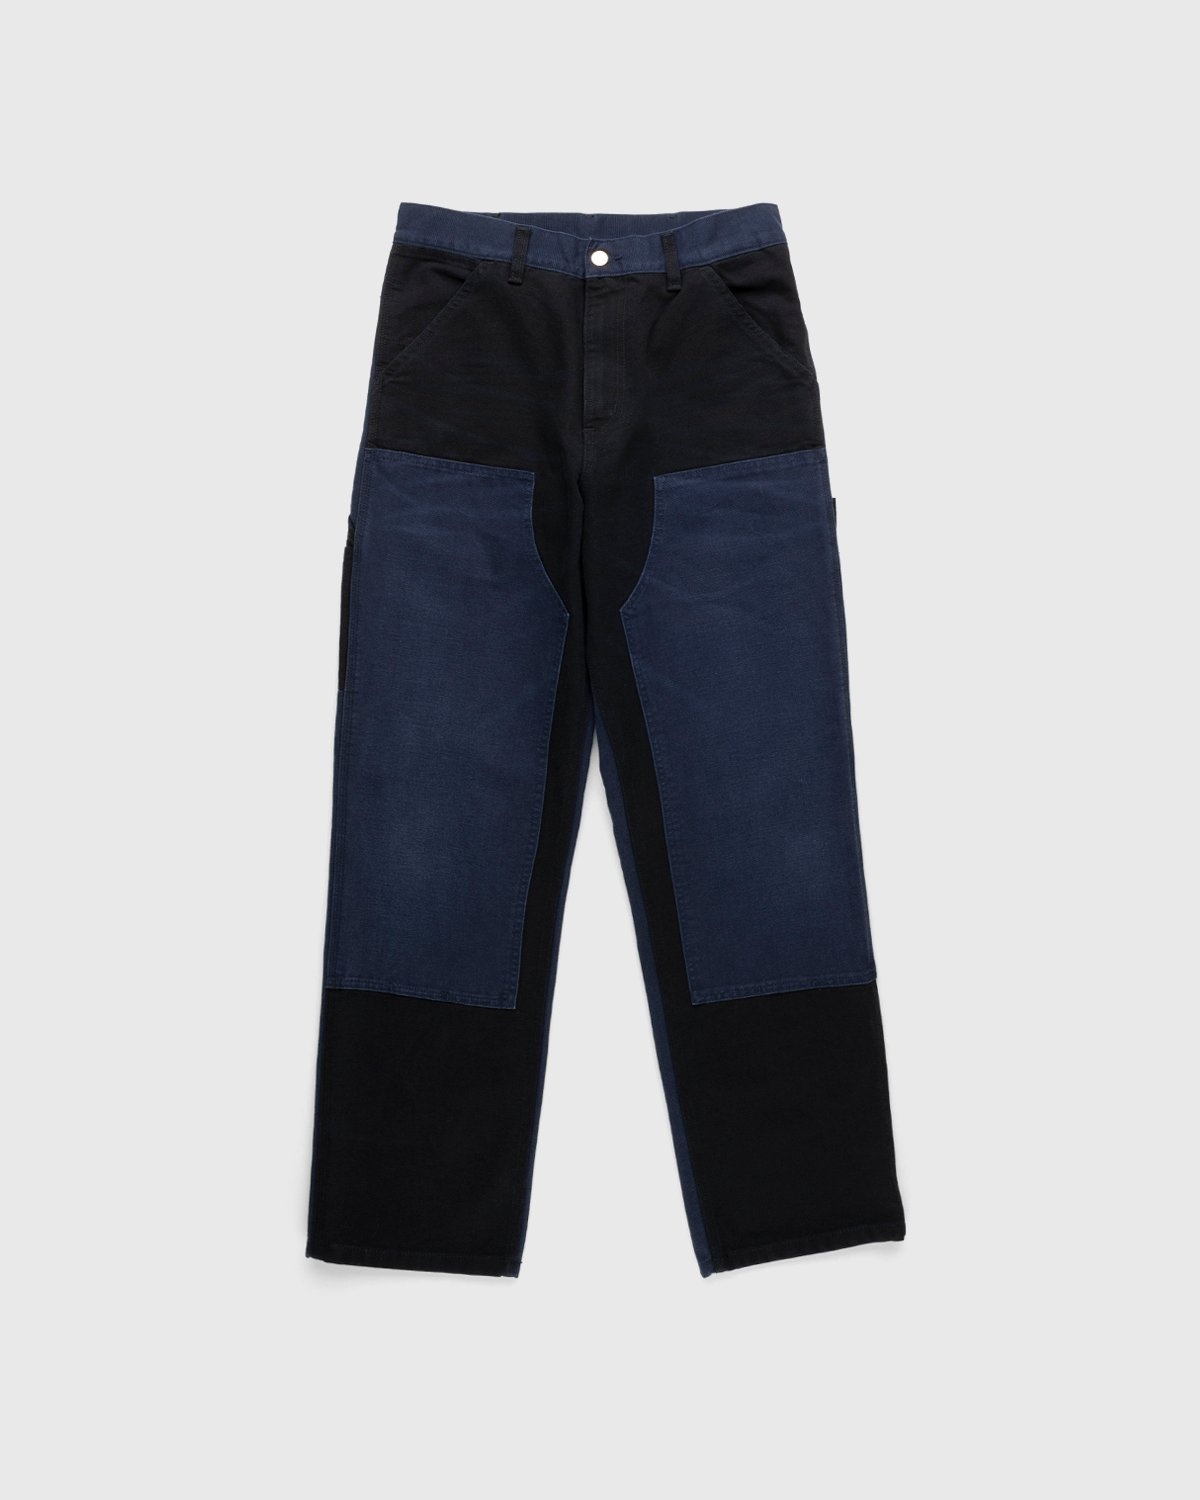 Carhartt WIP – Double Knee Pant Dark Navy - Work Pants - Blue - Image 1